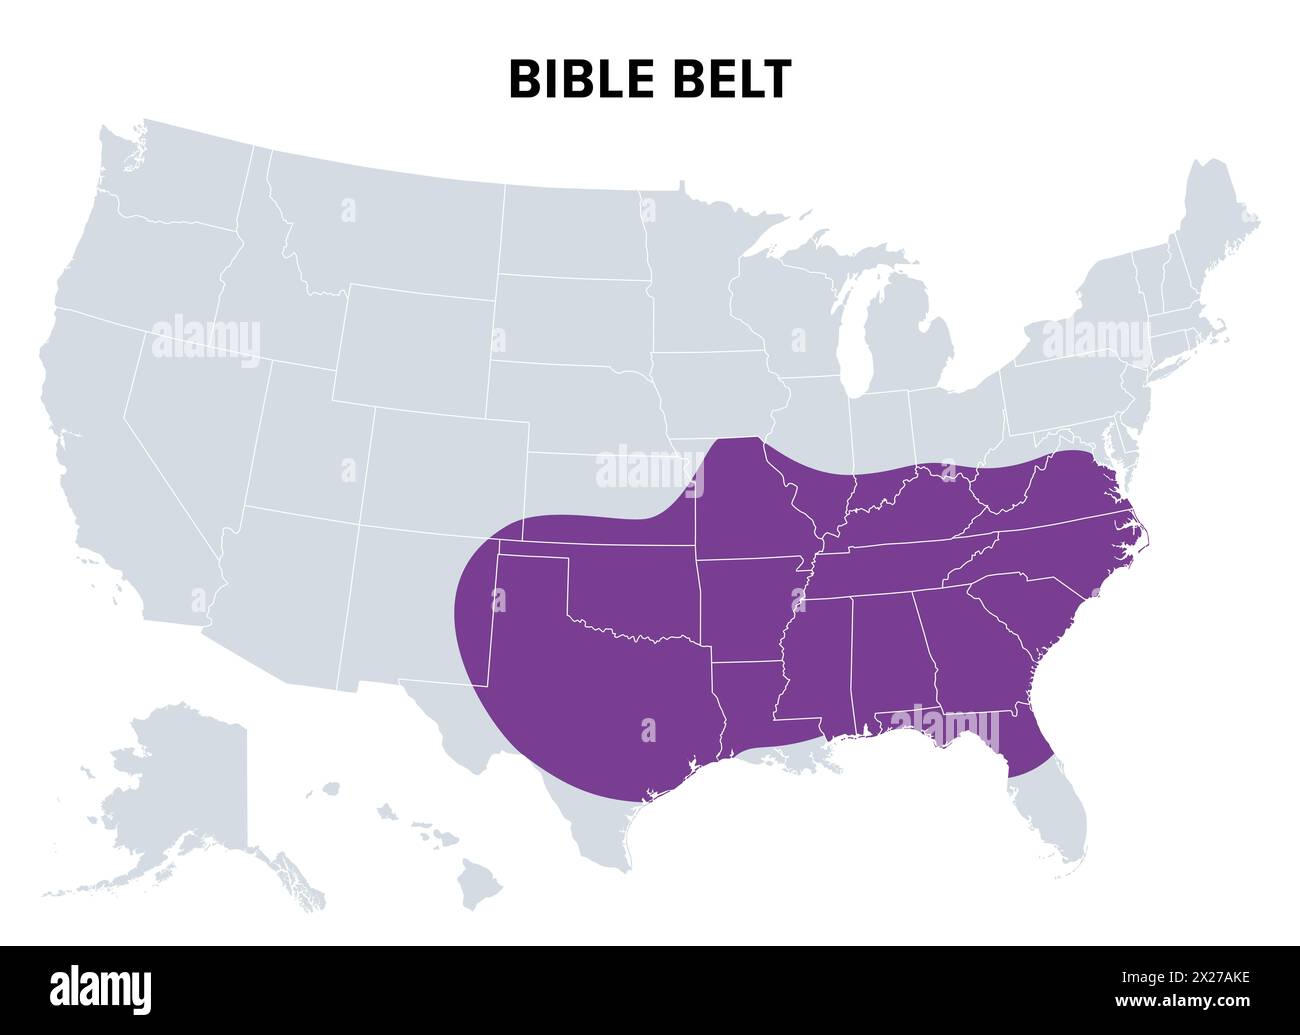 Bibelgürtel der Vereinigten Staaten, politische Karte. Region im Süden der Vereinigten Staaten und Bundesstaat Missouri. Stockfoto